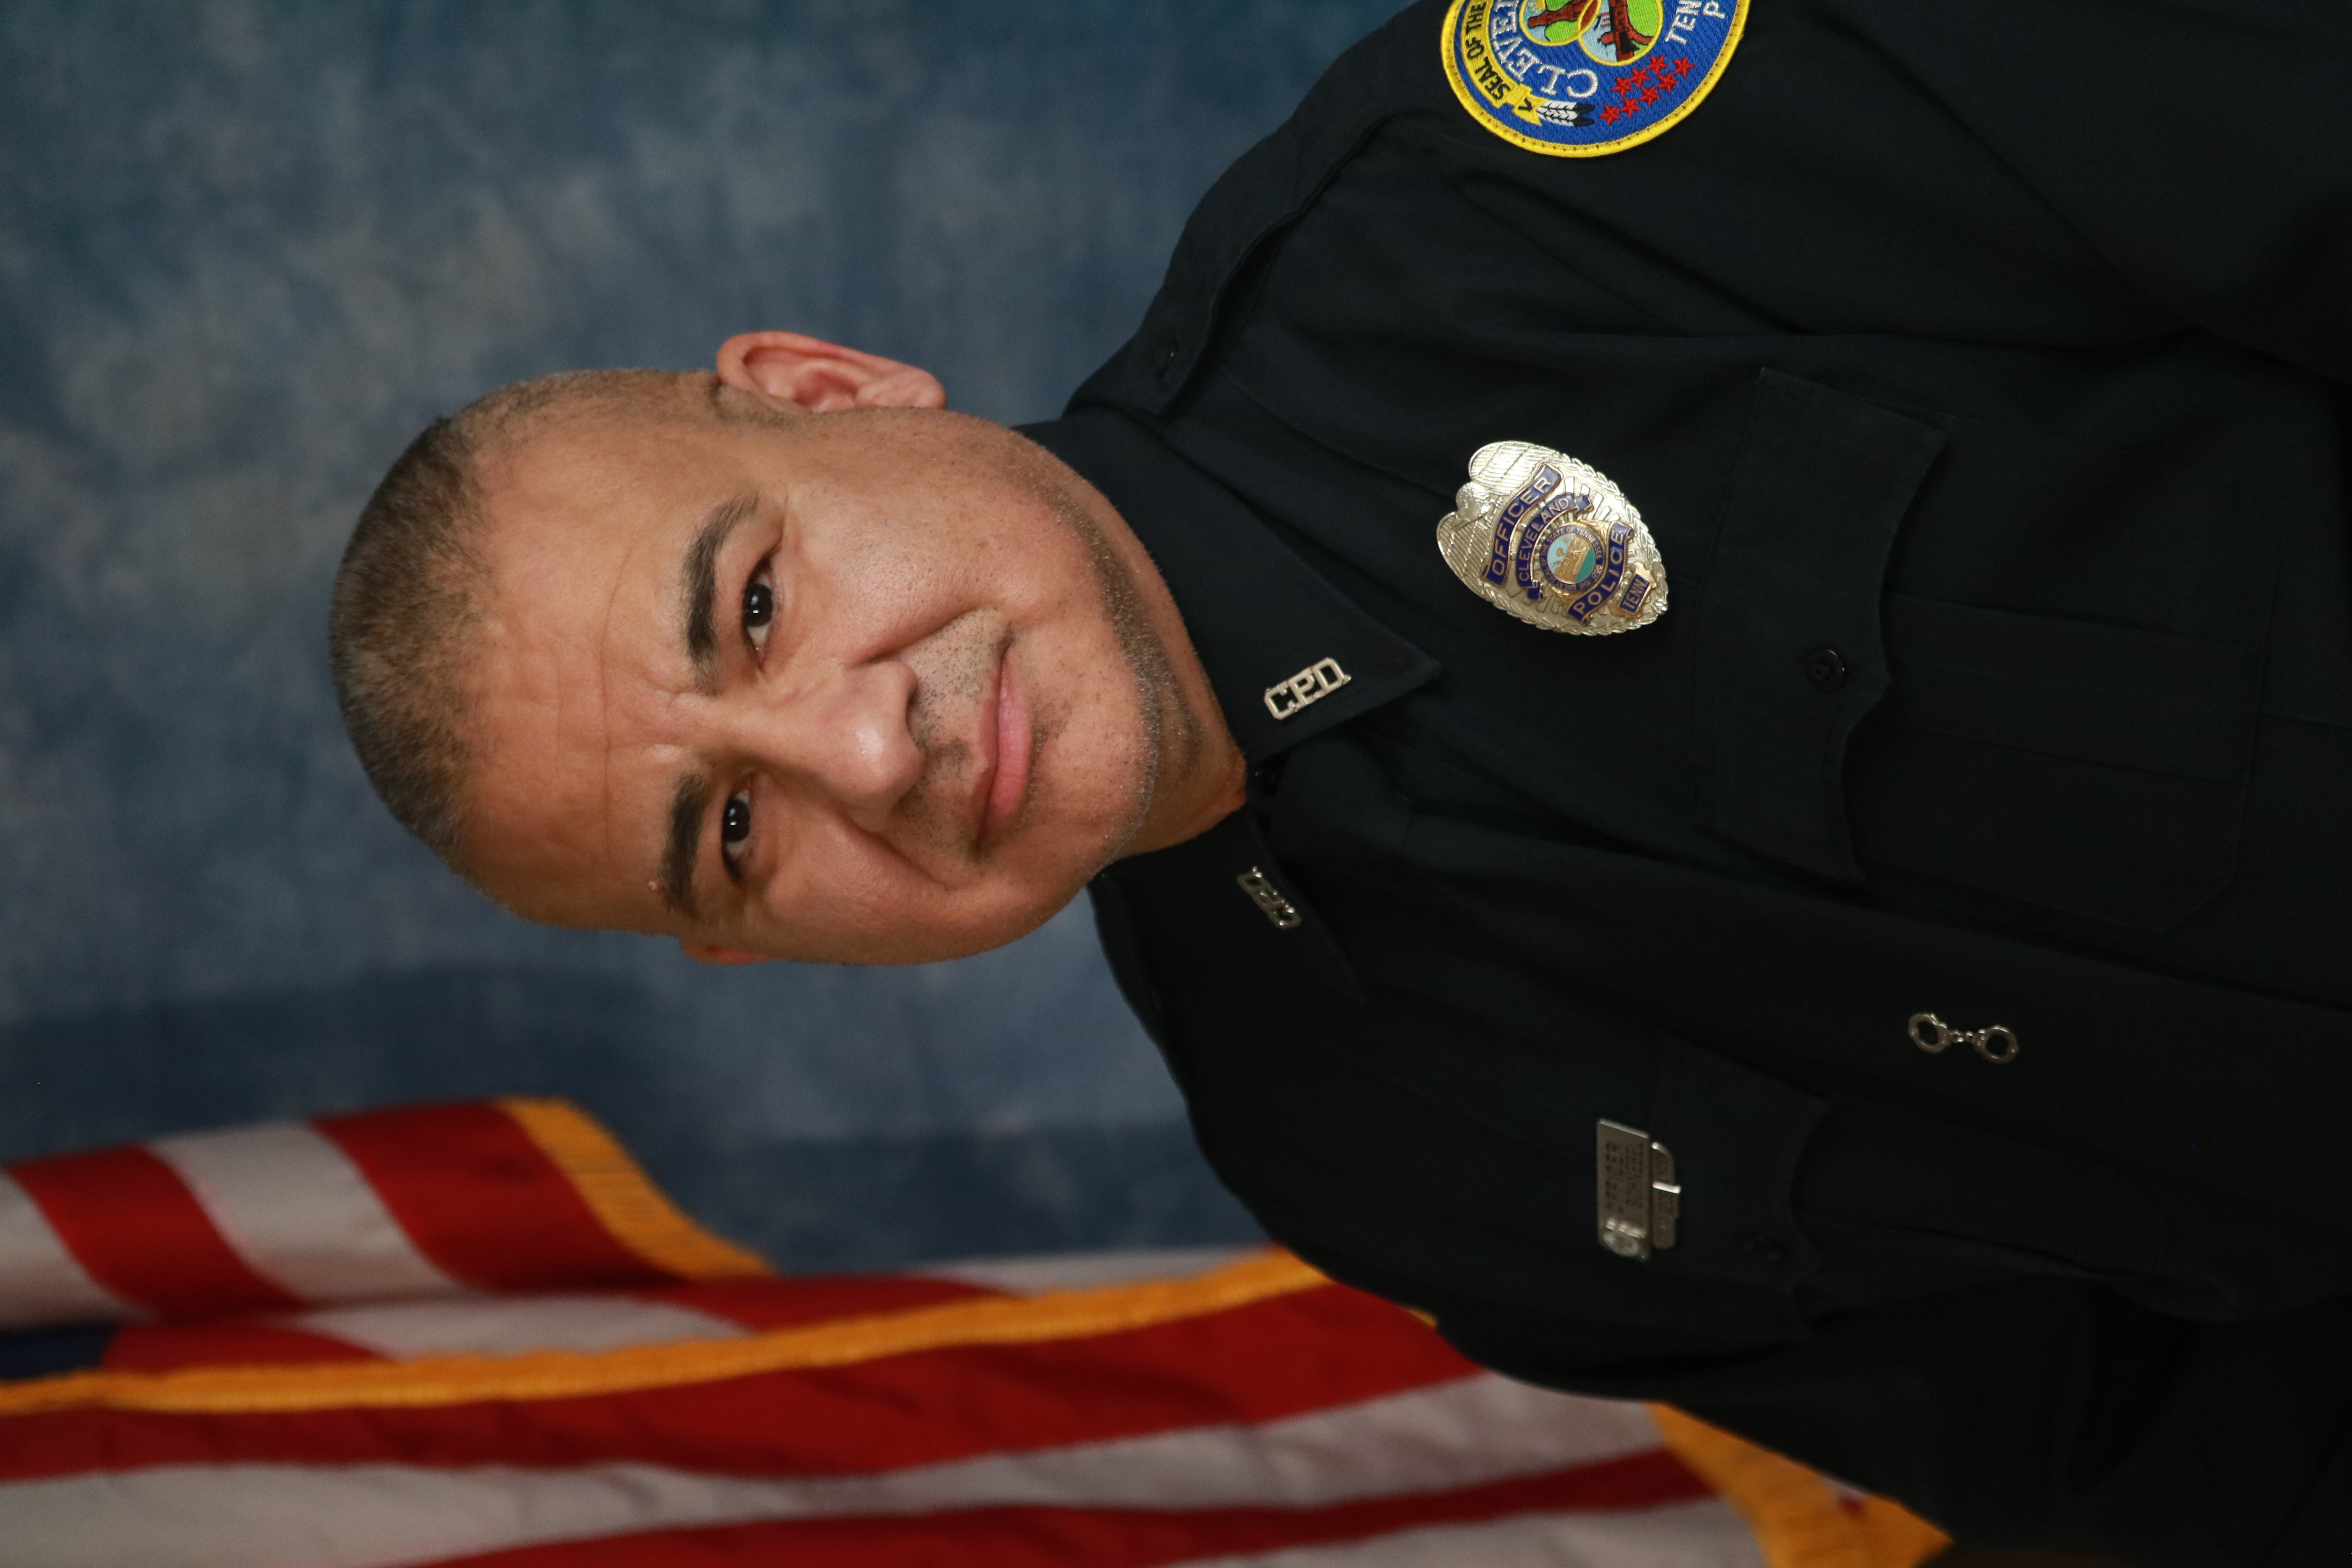 Officer Espinoza